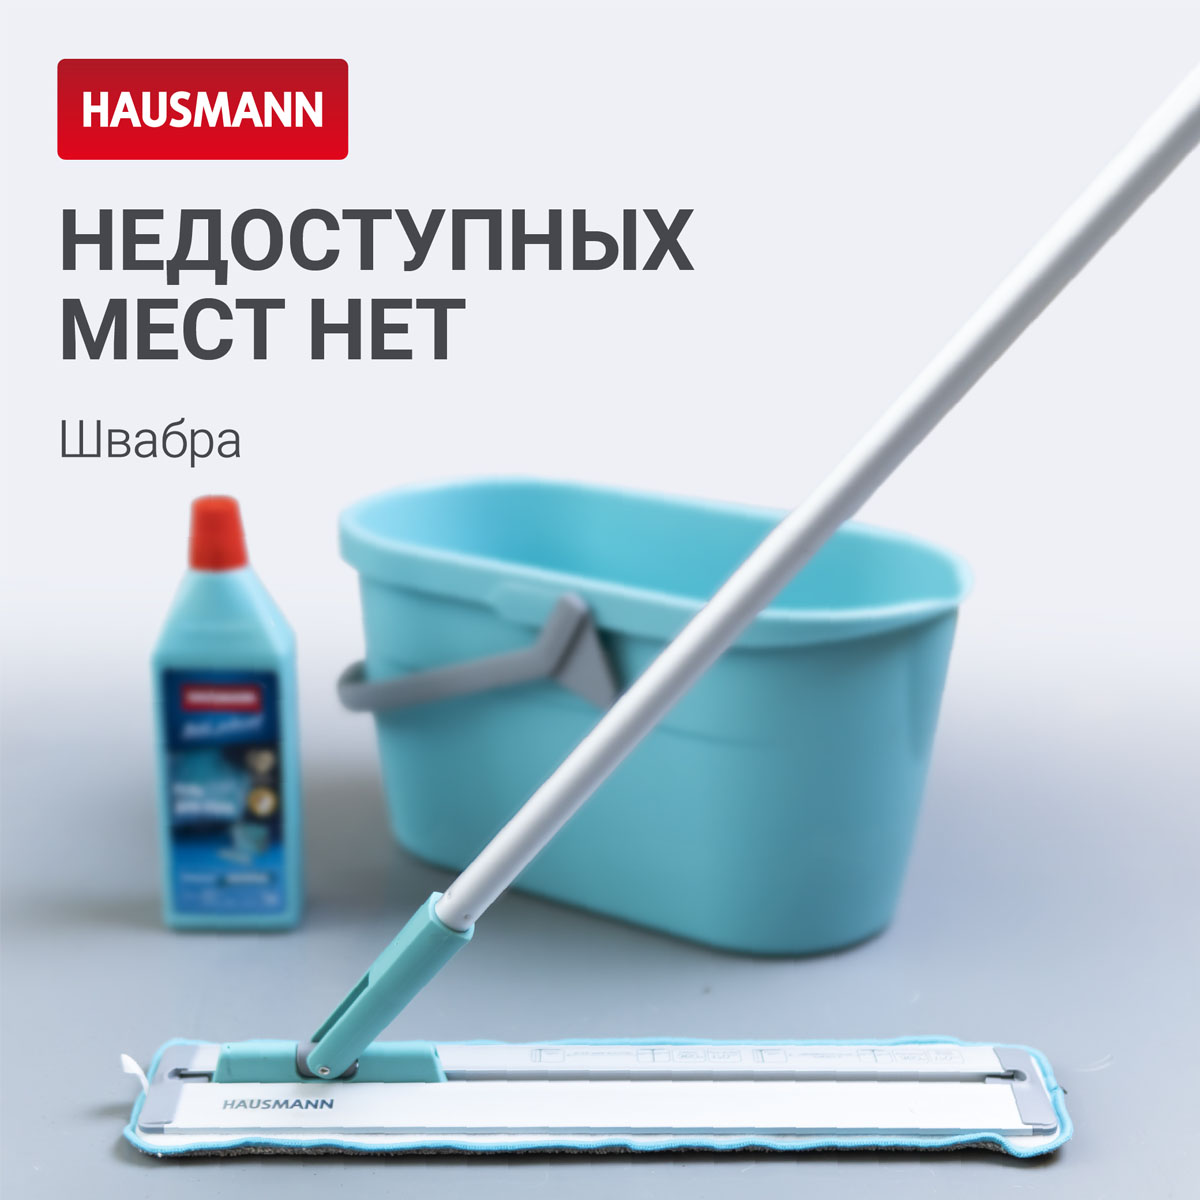 Швабра для влажной уборки Hausmann Cosmic Classic Home Slider с телескопической ручкой и слайд-механизмом